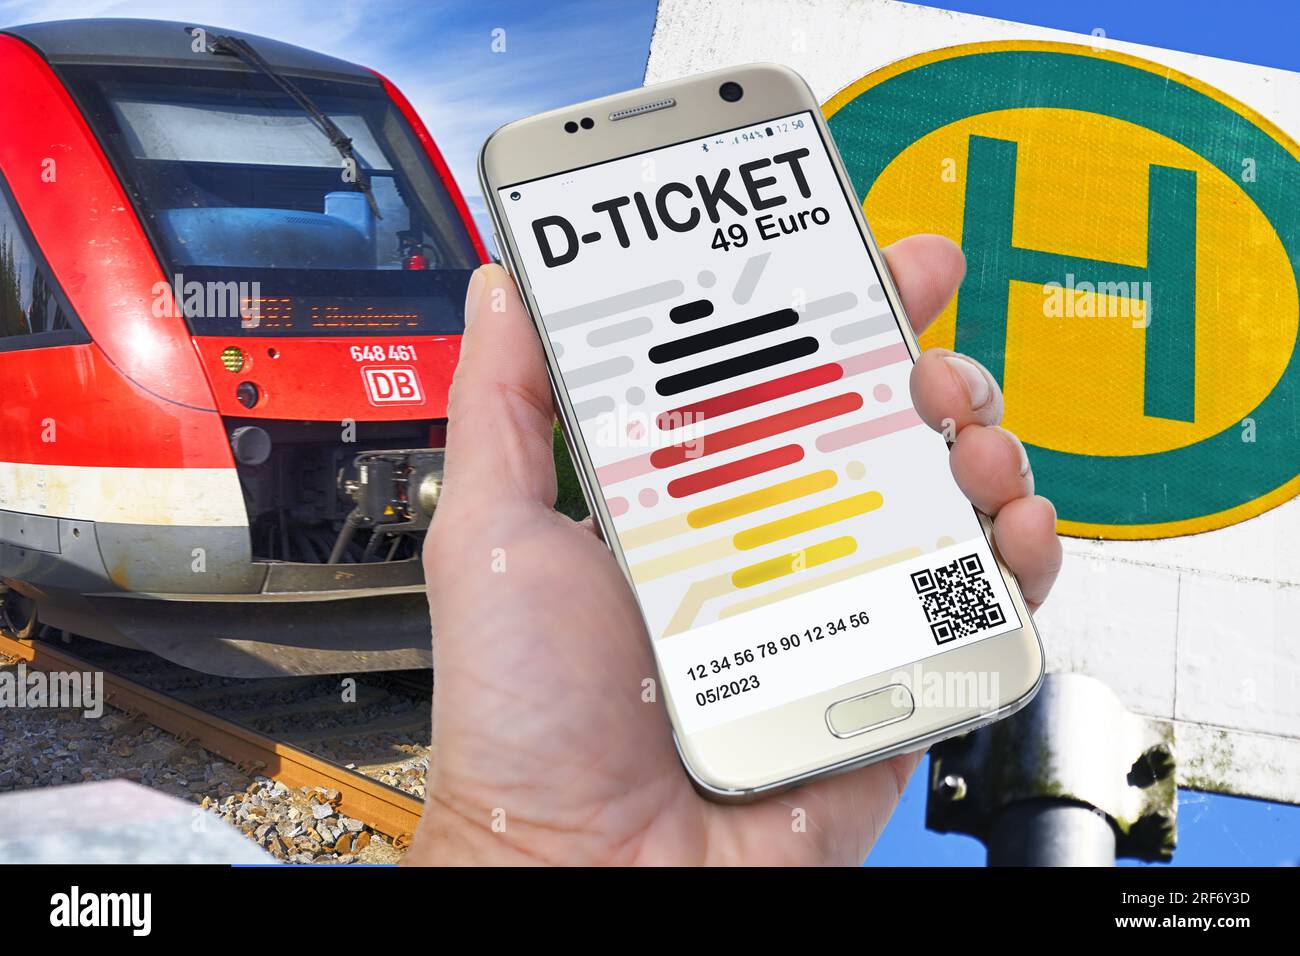 FOTOMONTAGE, Hand hält ein Smartphone mit D-Ticket vor einer Regionalbahn und einem Bushaltestellenschild Stock Photo